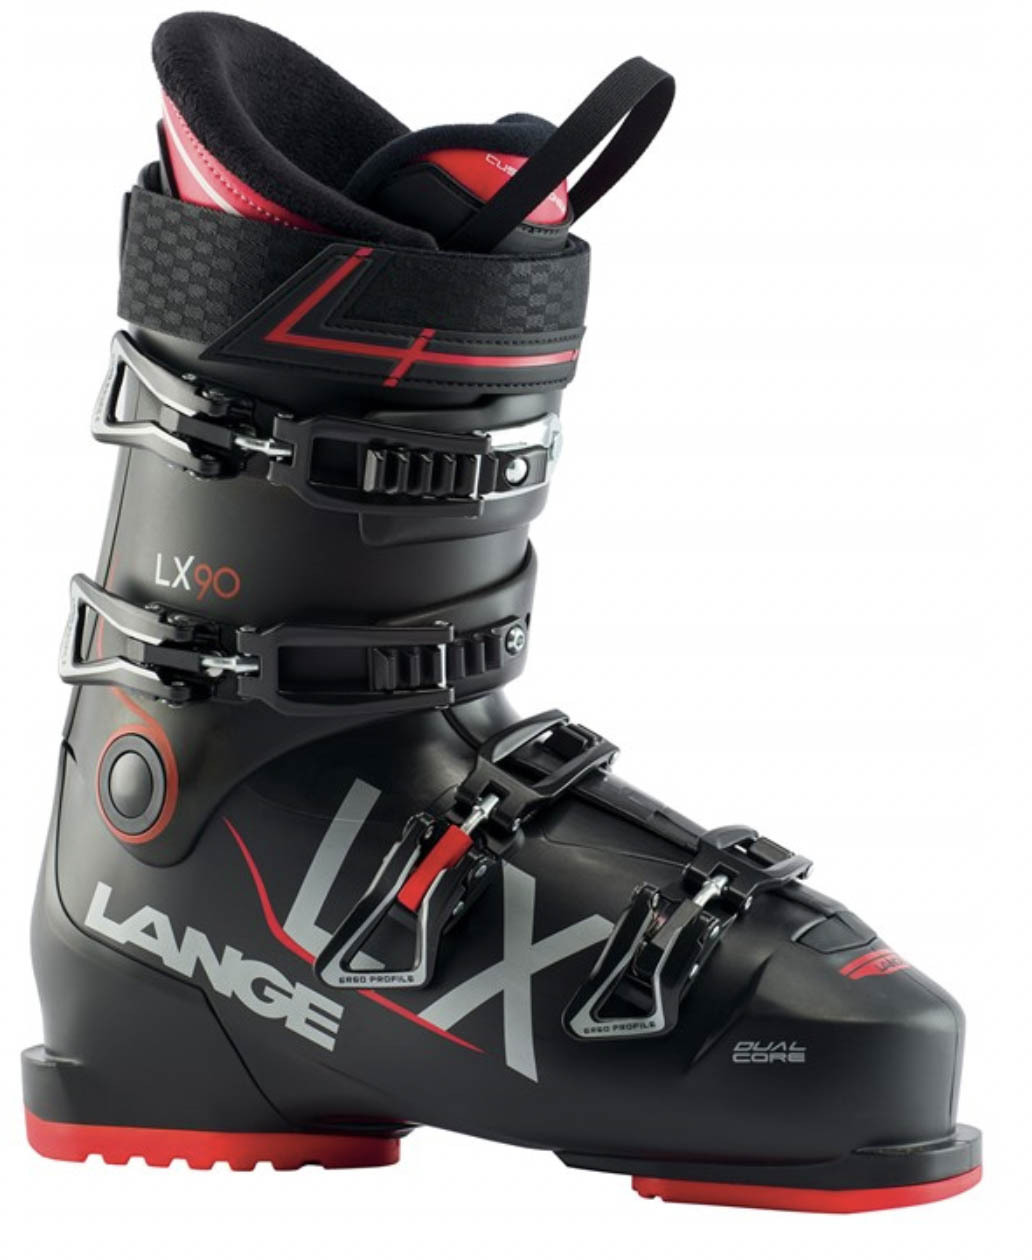 Lange LX 90 ski boot